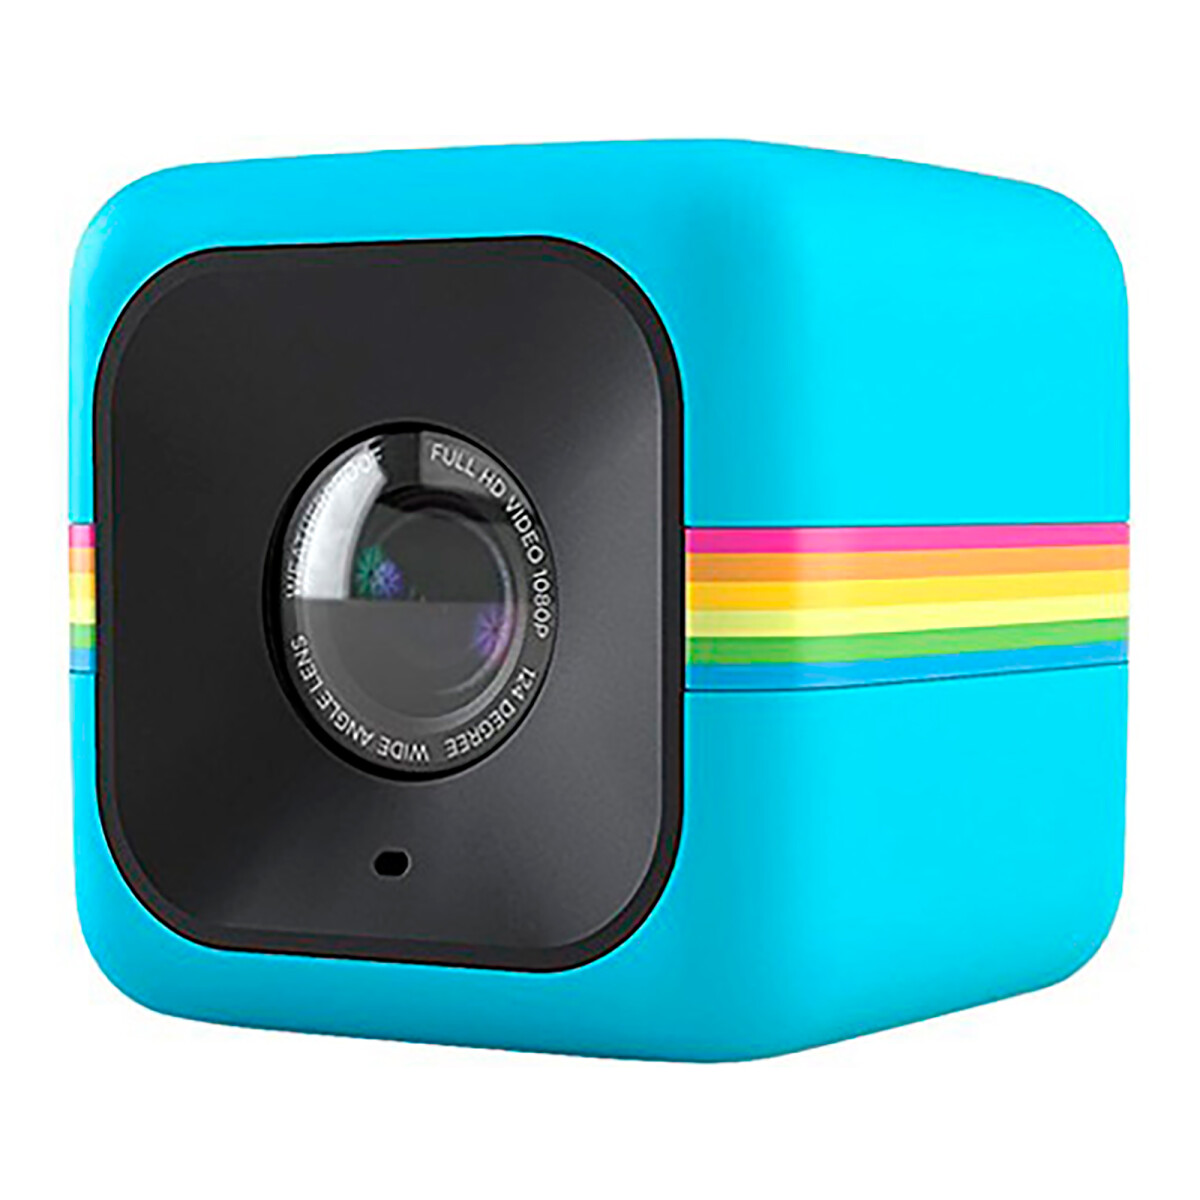 Cámara de Acción Cube Polaroid 6MP 1080P - CELESTE 